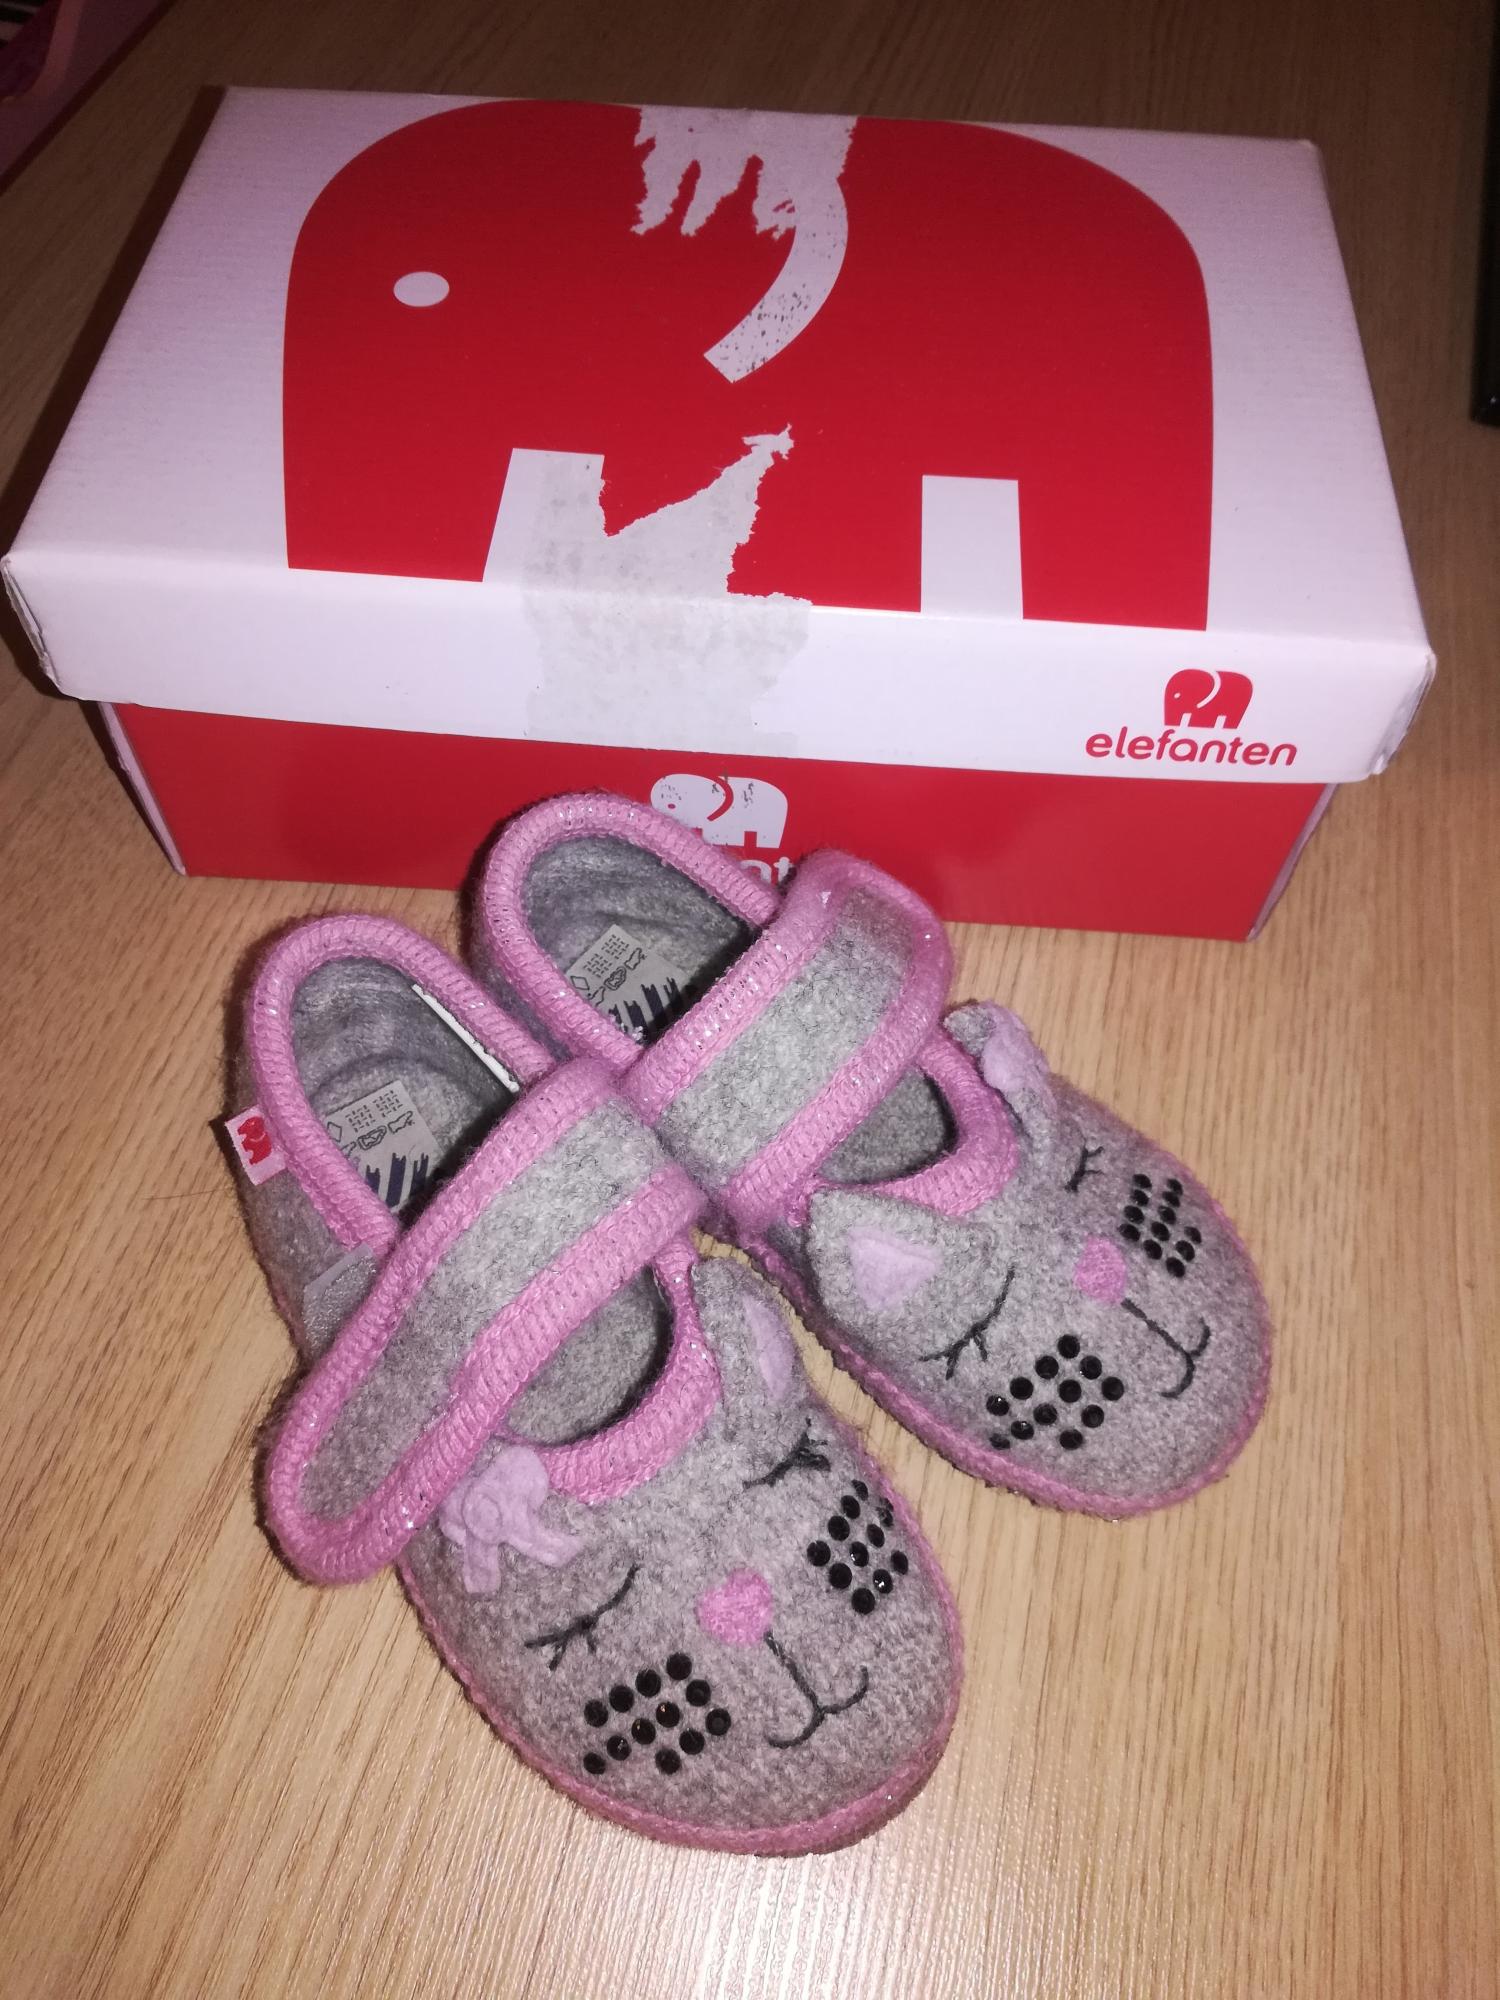 Немецкий тапок. Немецкие тапочки. Elefanten детская обувь. Фирма Elefanten Германия.